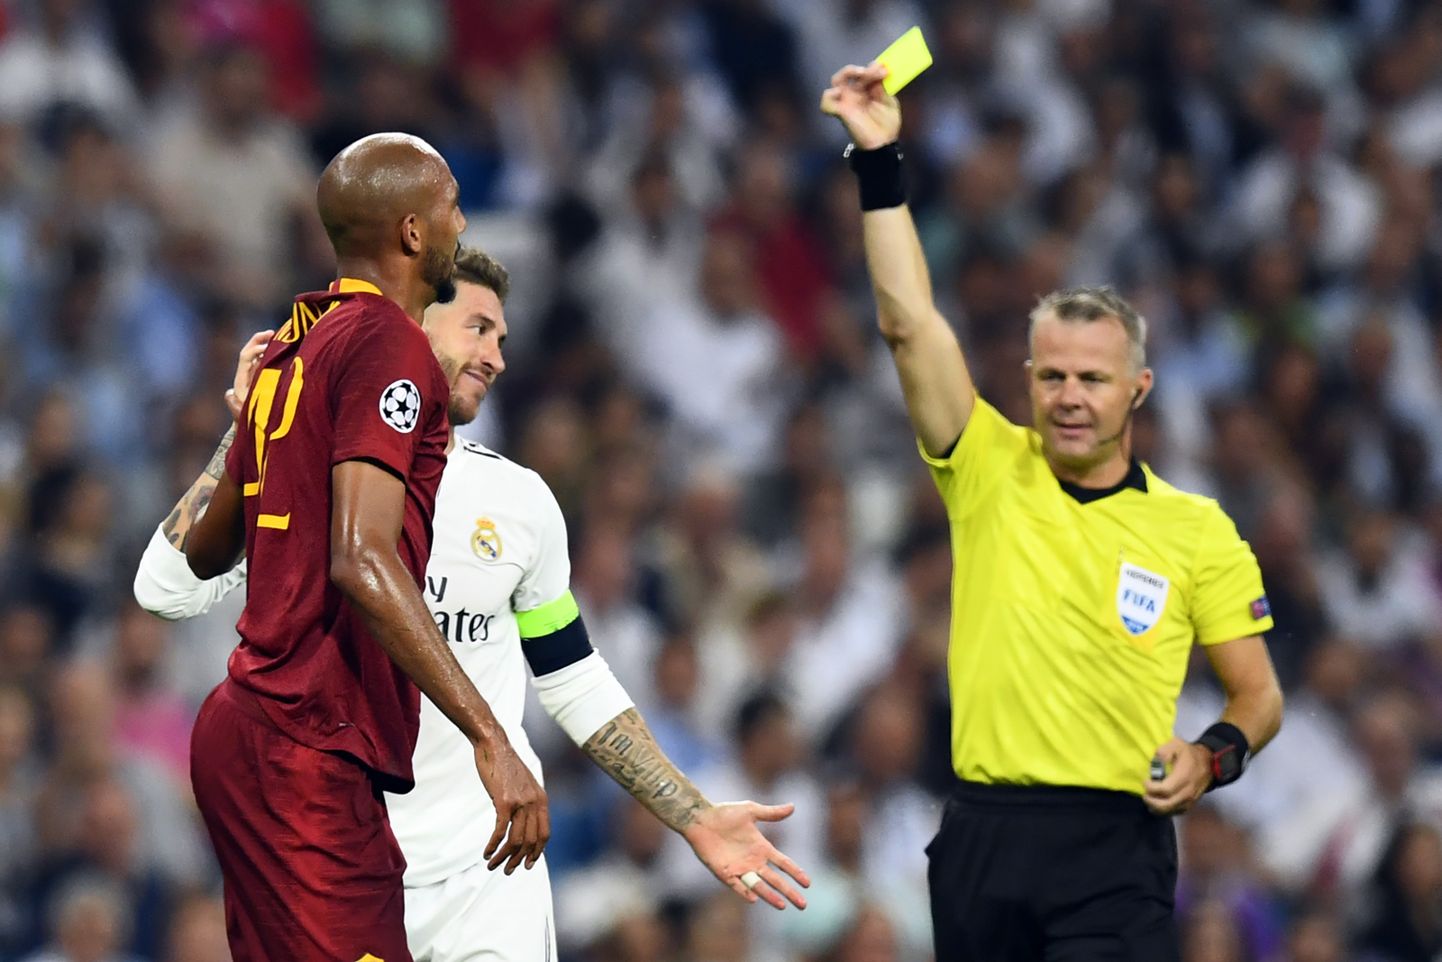 Madridi Reali jalgpallimeeskonna keskkaitsja Sergio Ramos nägi enda ees taas kollast kaarti.